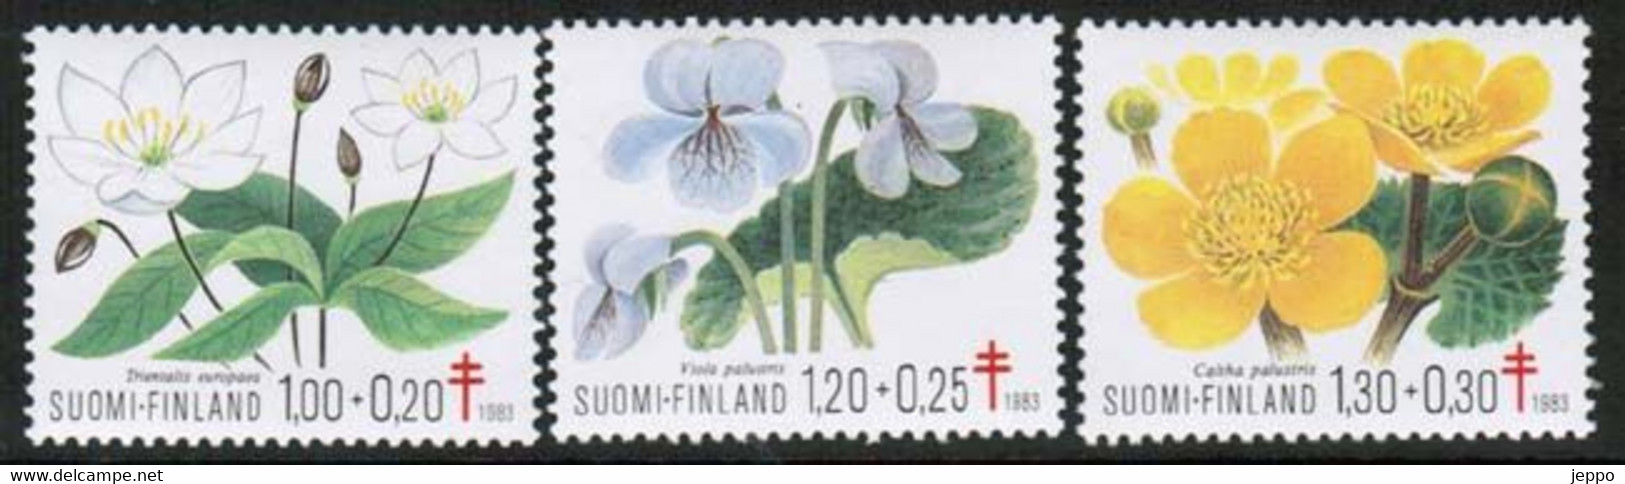 1983 Finland, Antitub. Set MNH. - Ongebruikt